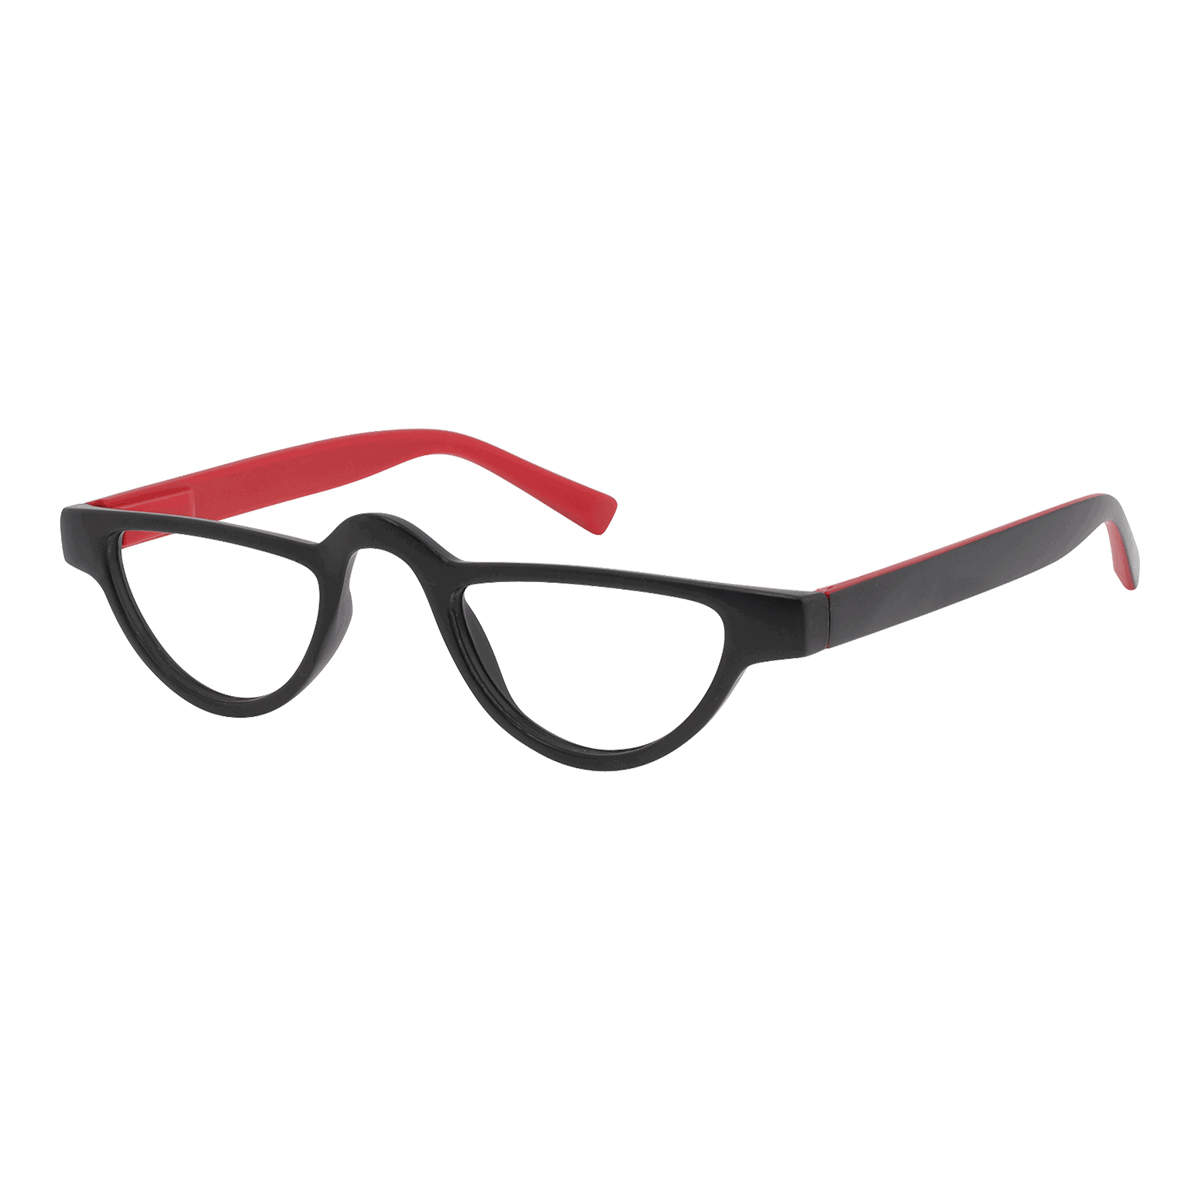 Ocytus - Geometric Red-Black Reading Glasses for Men & Women